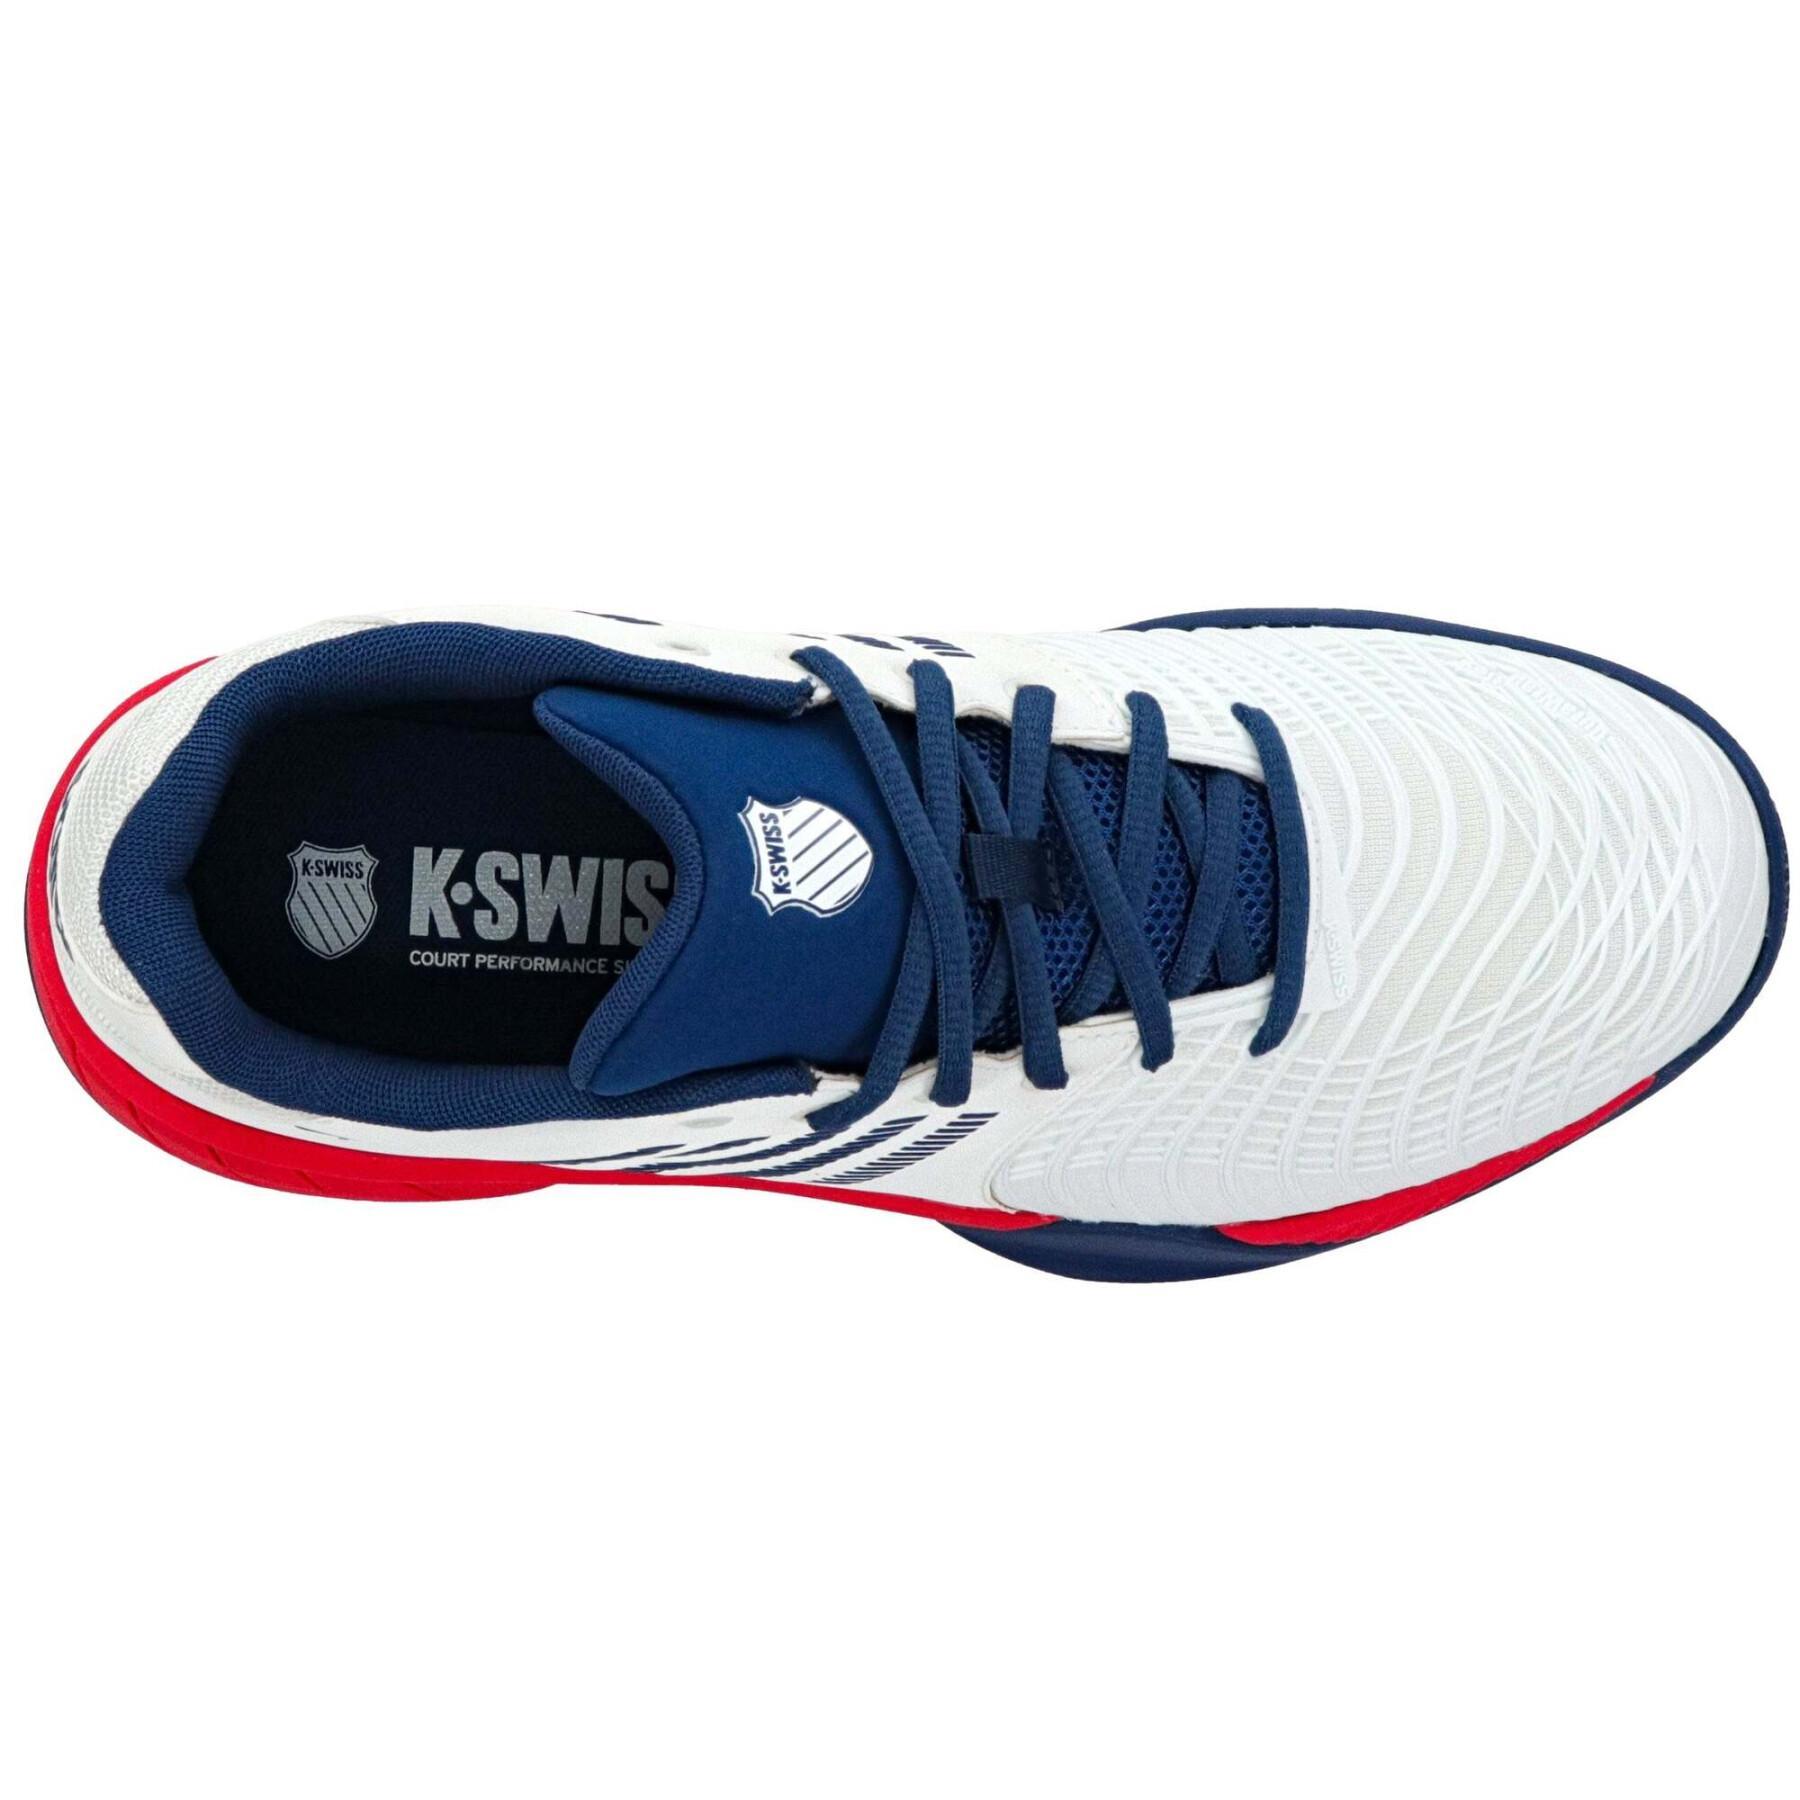 Sapatos de ténis K-Swiss Express Light 3 Hb